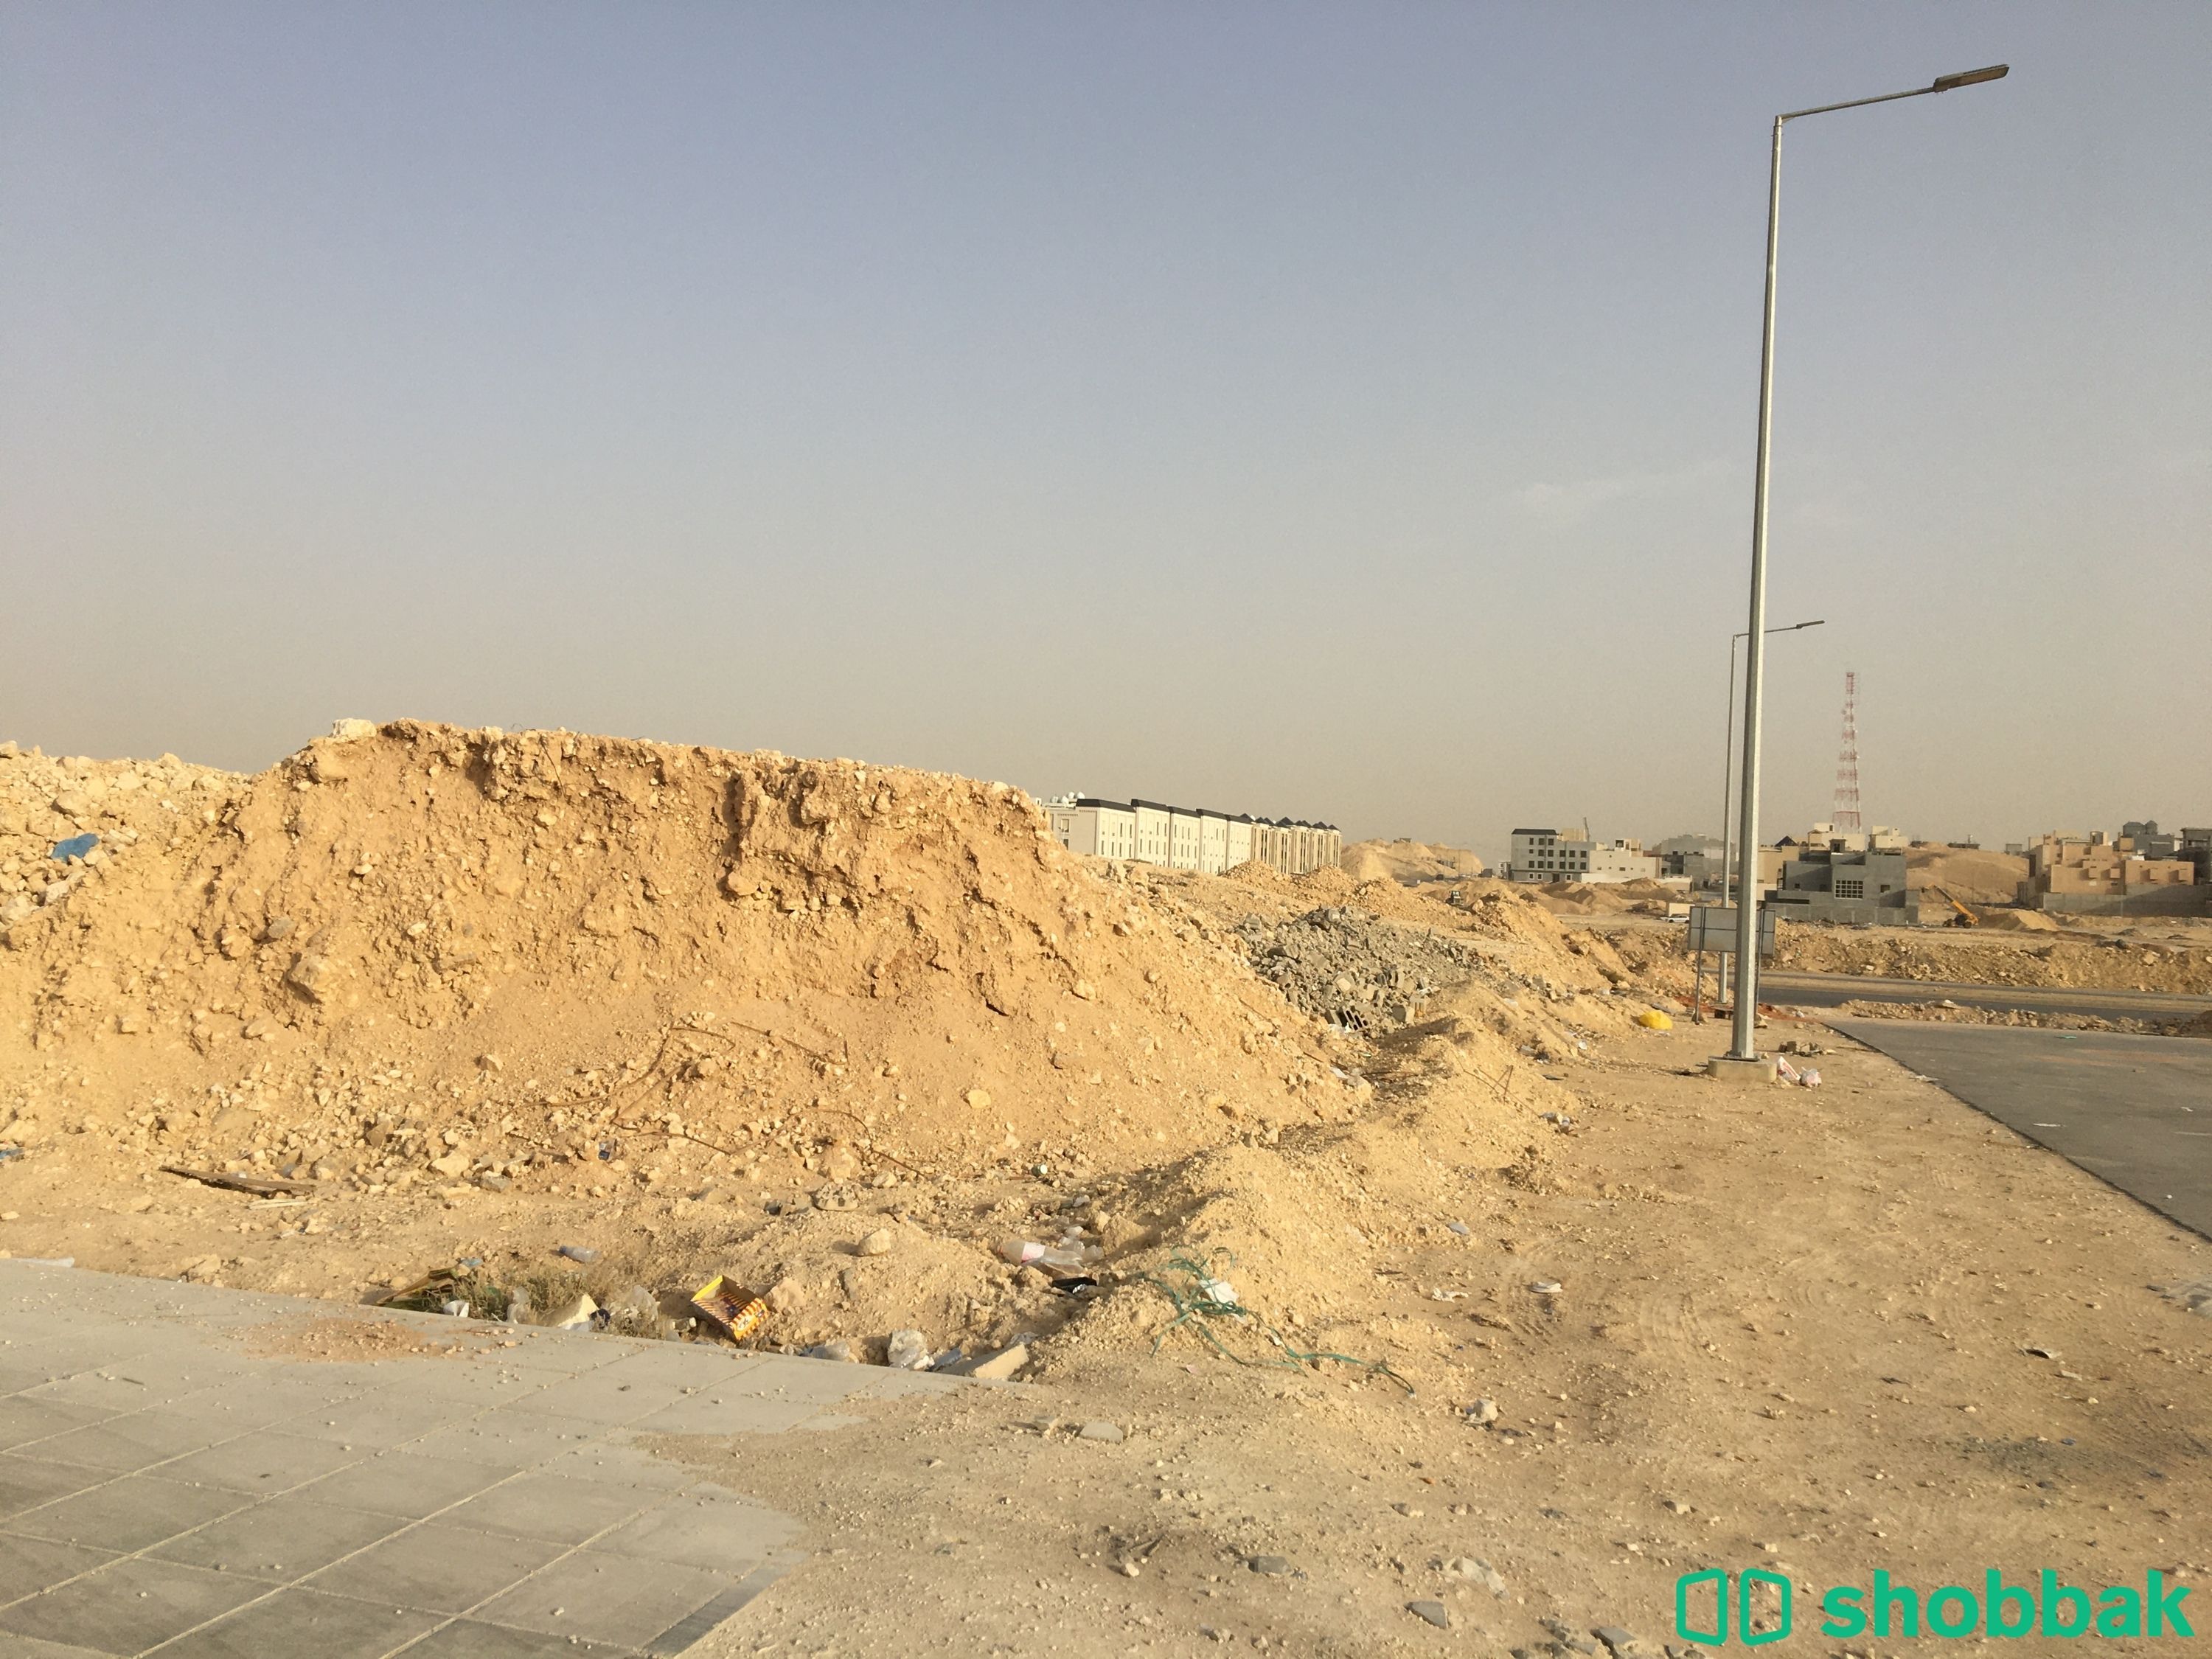 أرض للبيع، حي النرجس، طريق انس بن مالك  شباك السعودية